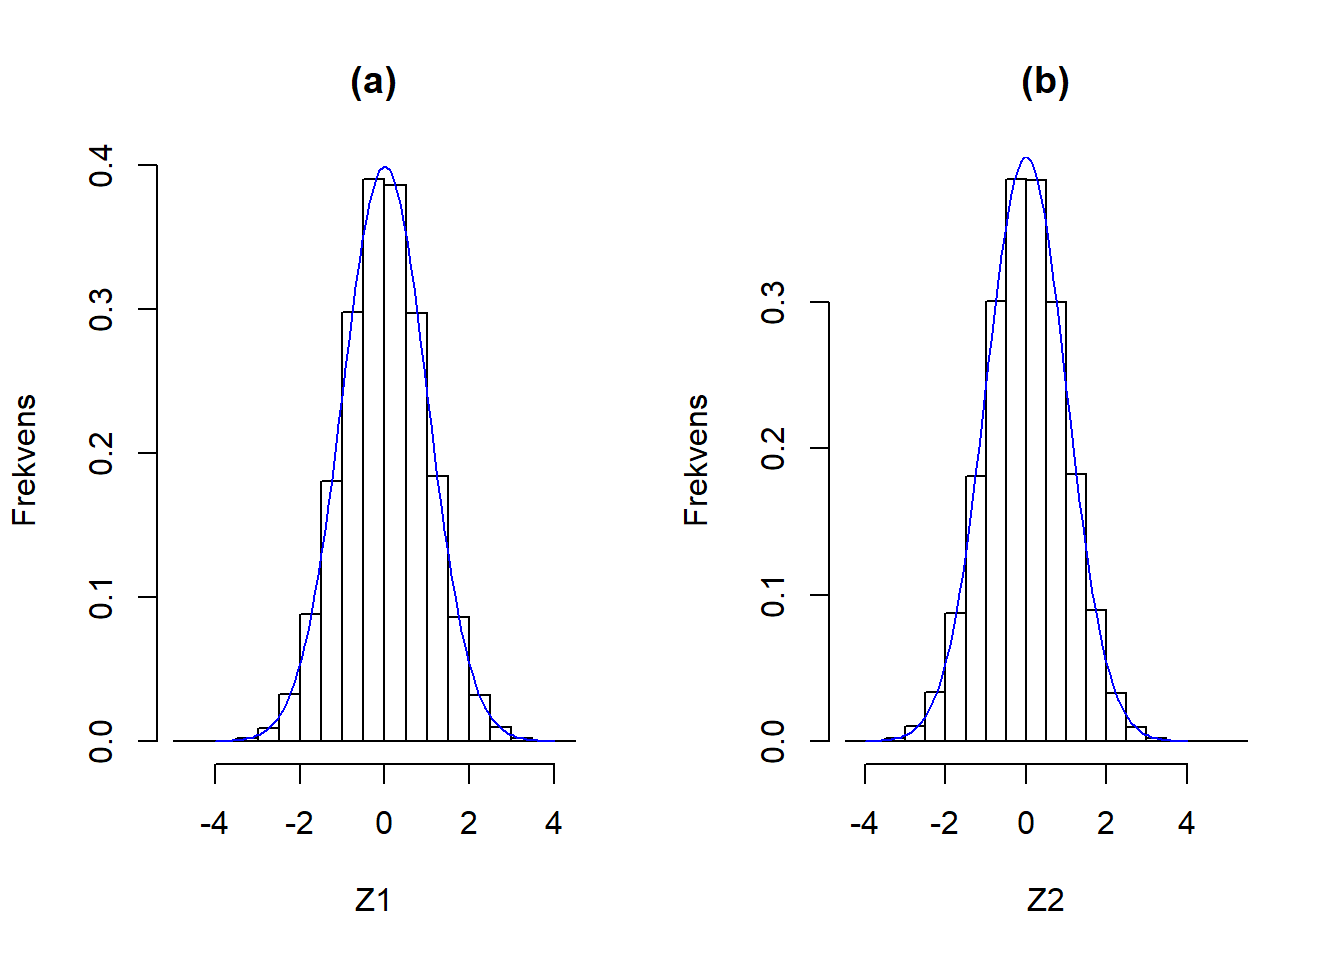 Sammenligning af histogrammerne for henholdsvis Z1 (a) og Z2 (b) med densiteten for standard normalfordeling, som er angivet med en blå linje.